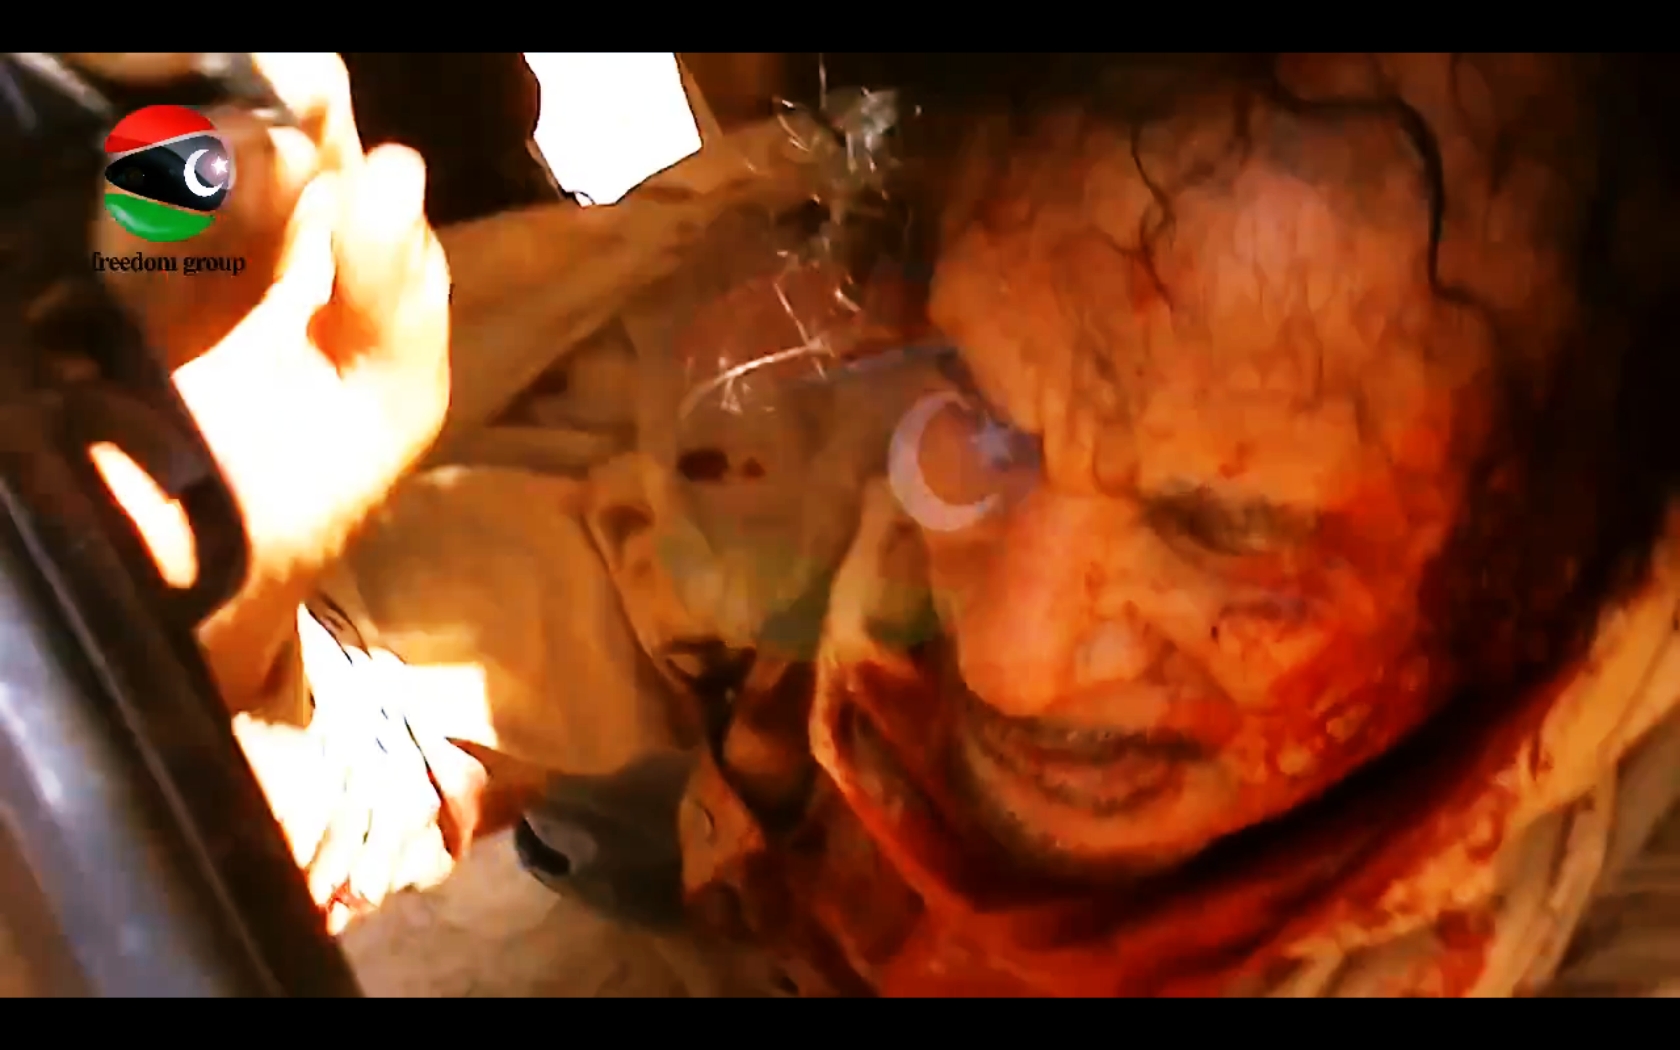 Cel mai clar VIDEO cu Ghaddafi inca in viata, cu 5 minute inainte sa fie ucis. Imagini socante